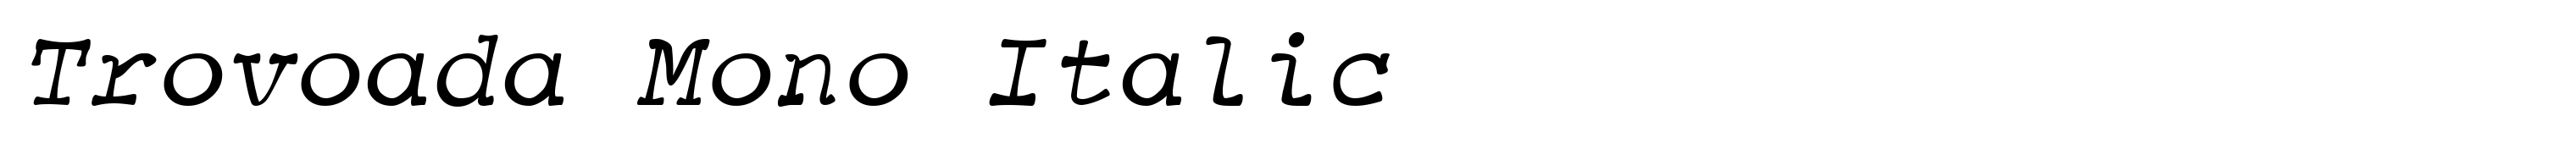 Trovoada Mono Italic